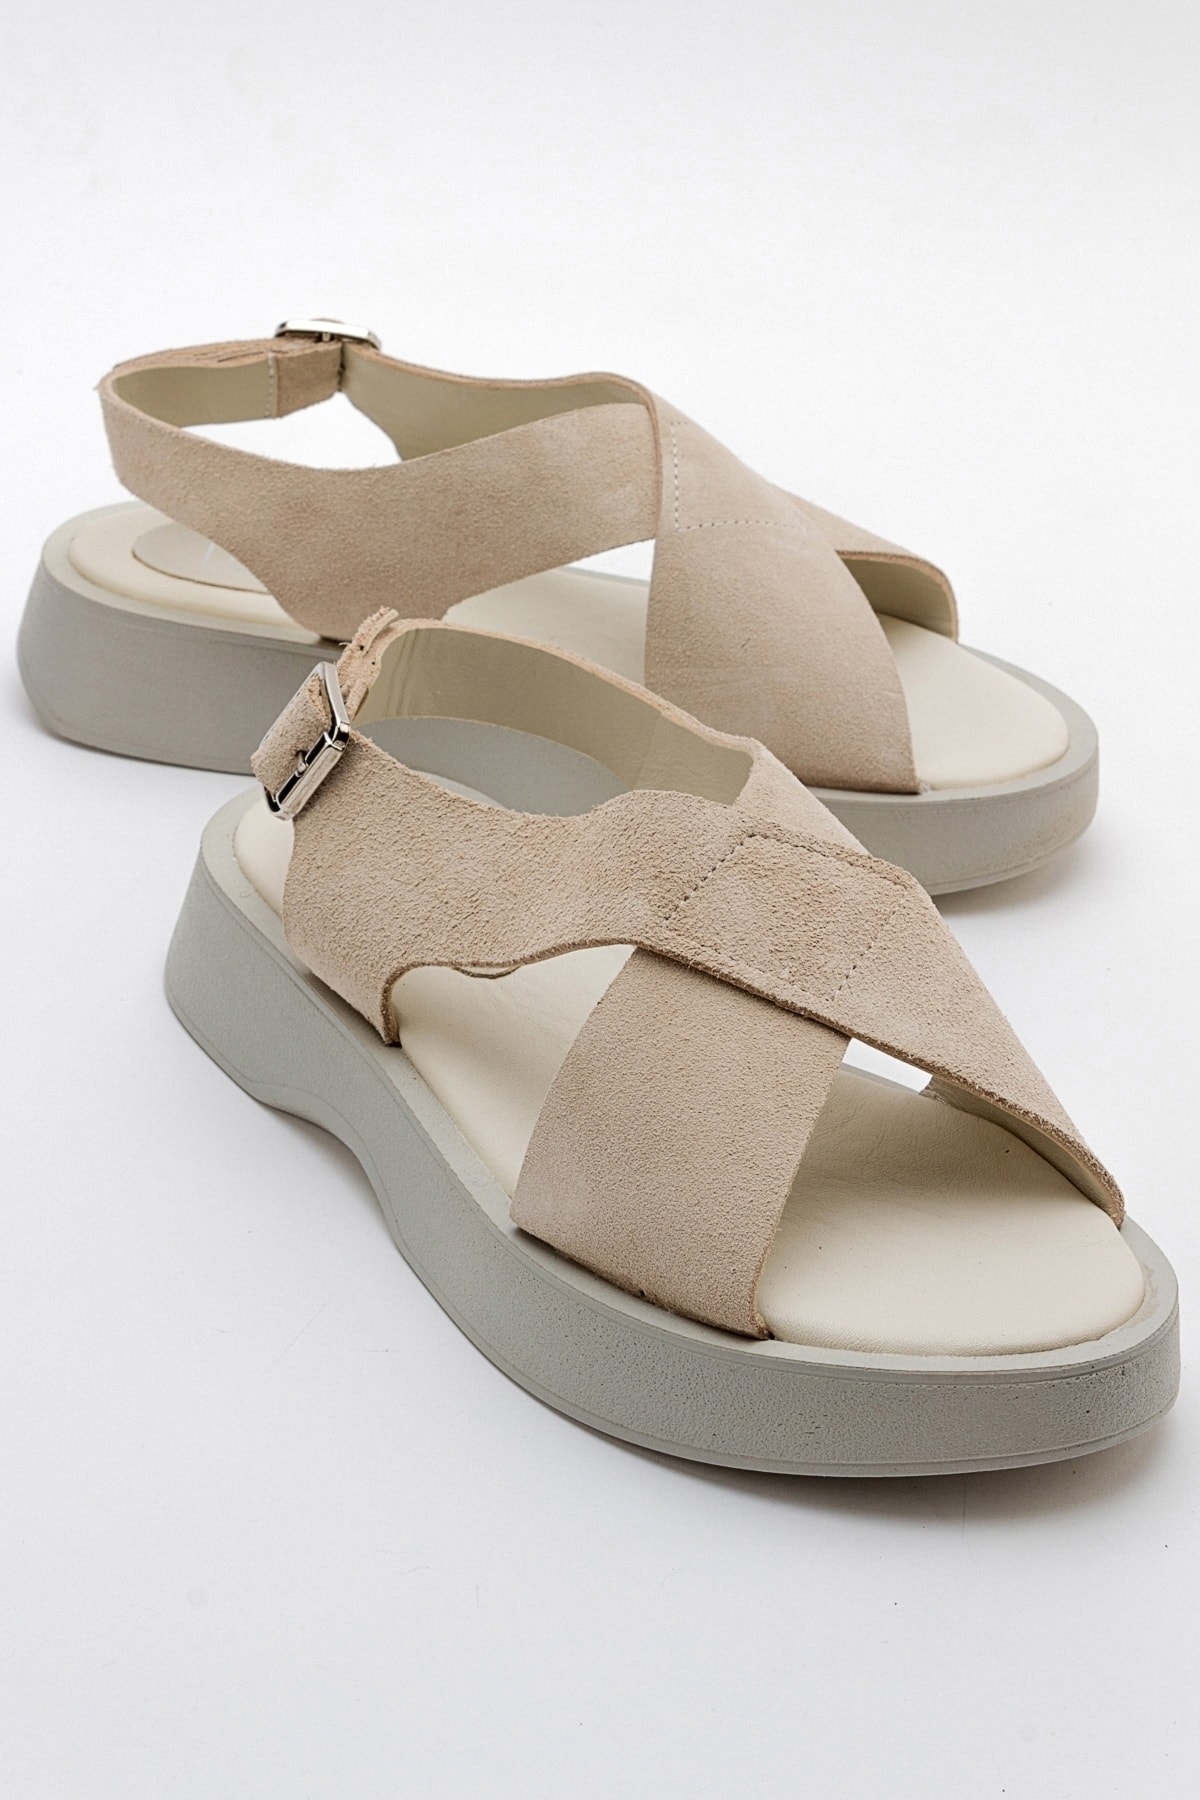 Levně LuviShoes VOGG Women's Beige Suede Genuine Leather Sandals